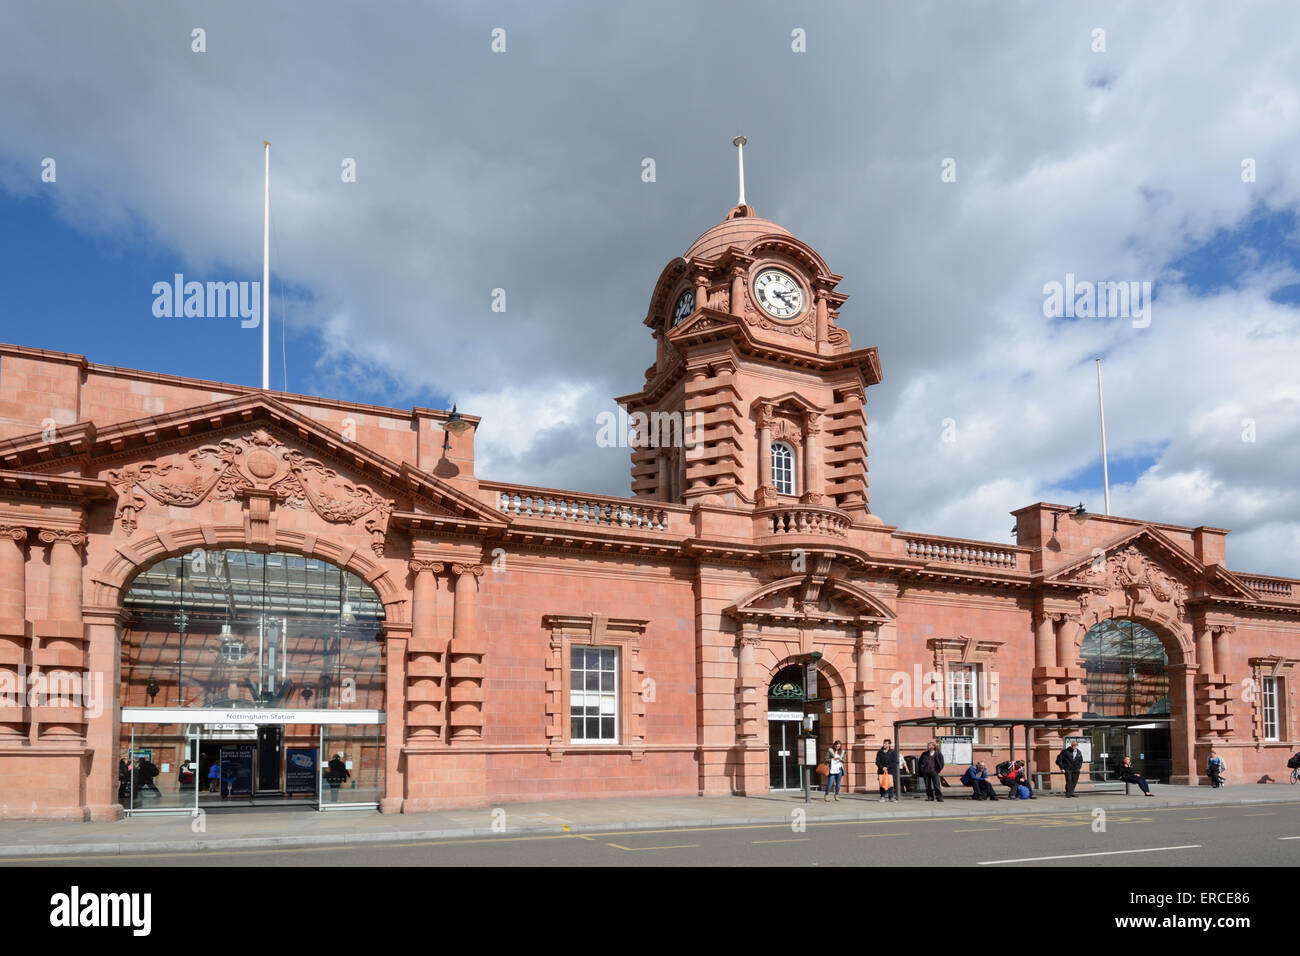 Nottingham Railway Station, recently refurbished. Nottingham, England. Stock Photo